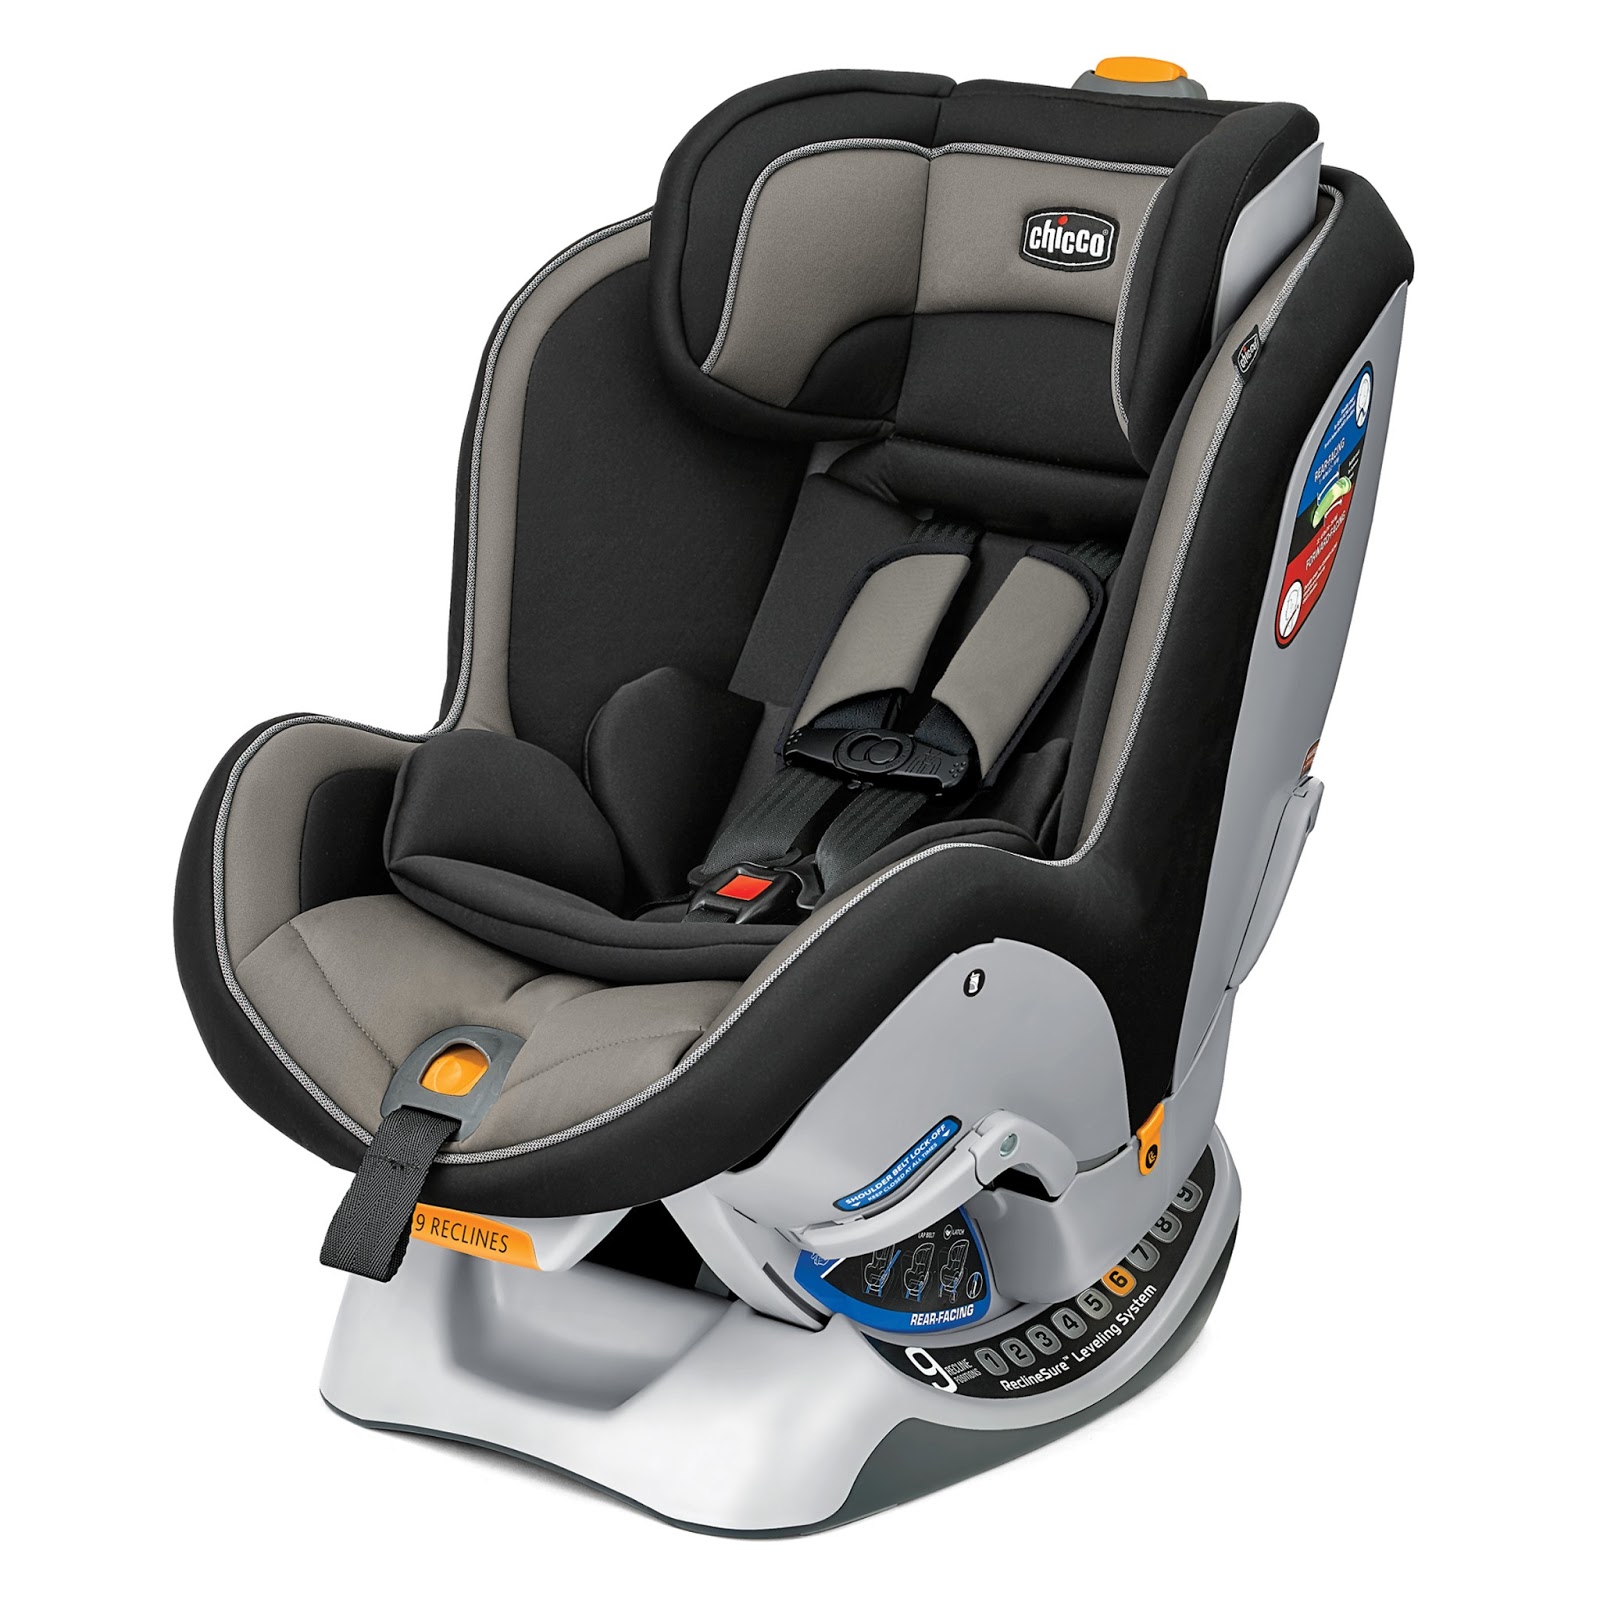 Ghế ngồi ô tô Chicco NextFit rất an toàn cho trẻ khi ngồi trên xe cũng như lúc xảy ra va chạm